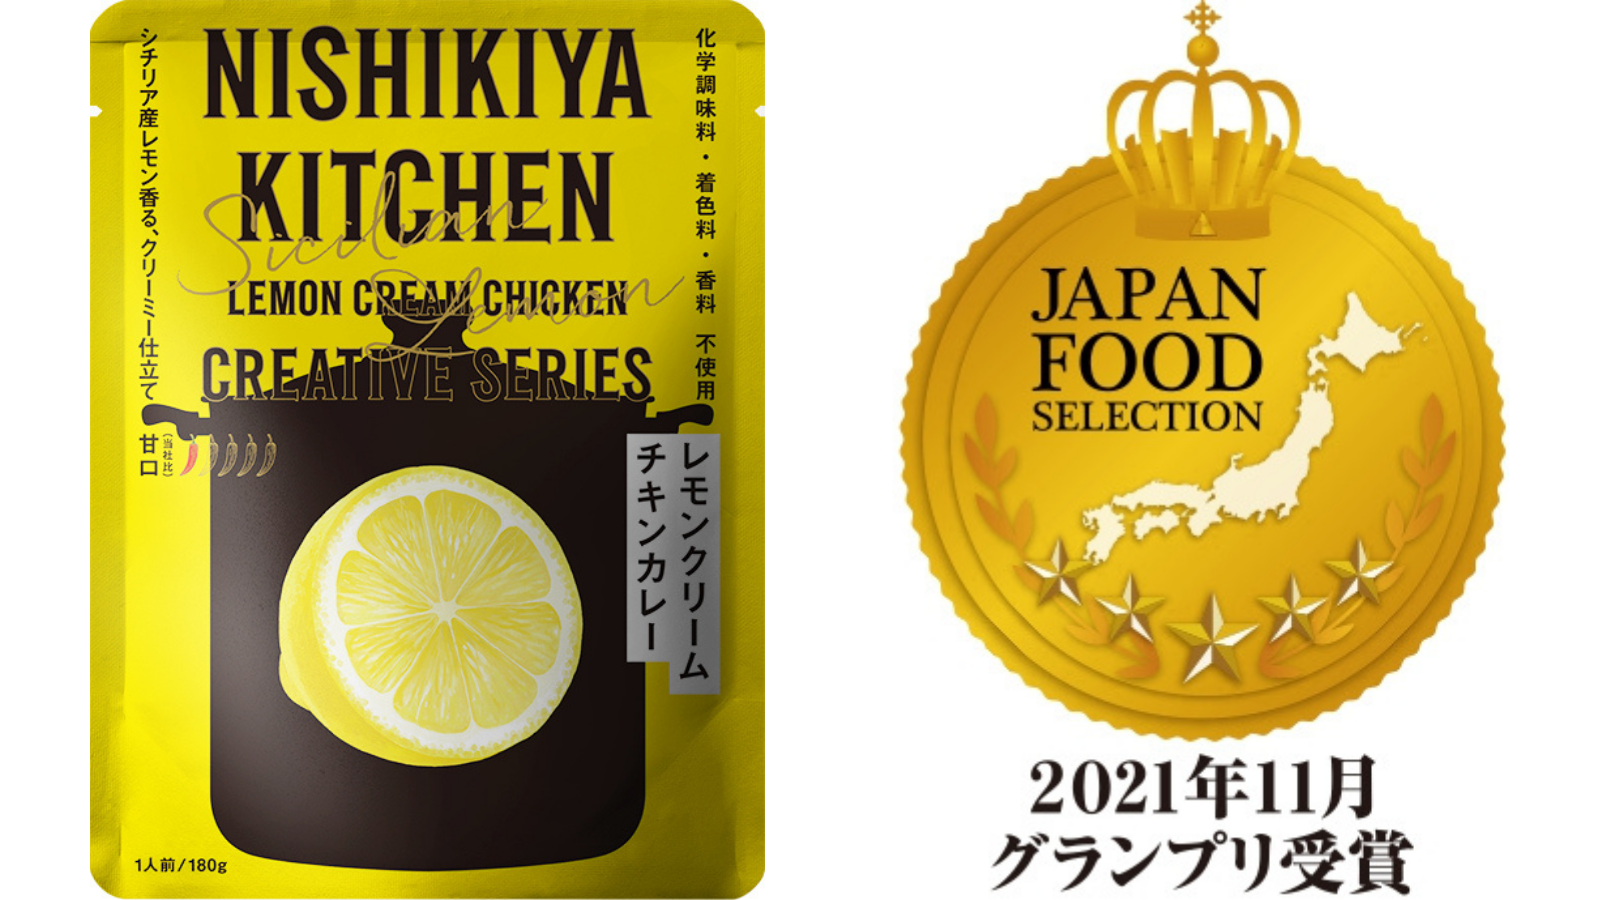 ジャパン フード セレクションにて レモンクリームチキンカレー が最高位となる グランプリ を受賞 Nishikiya Kitchen 株式会社にしき食品のプレスリリース